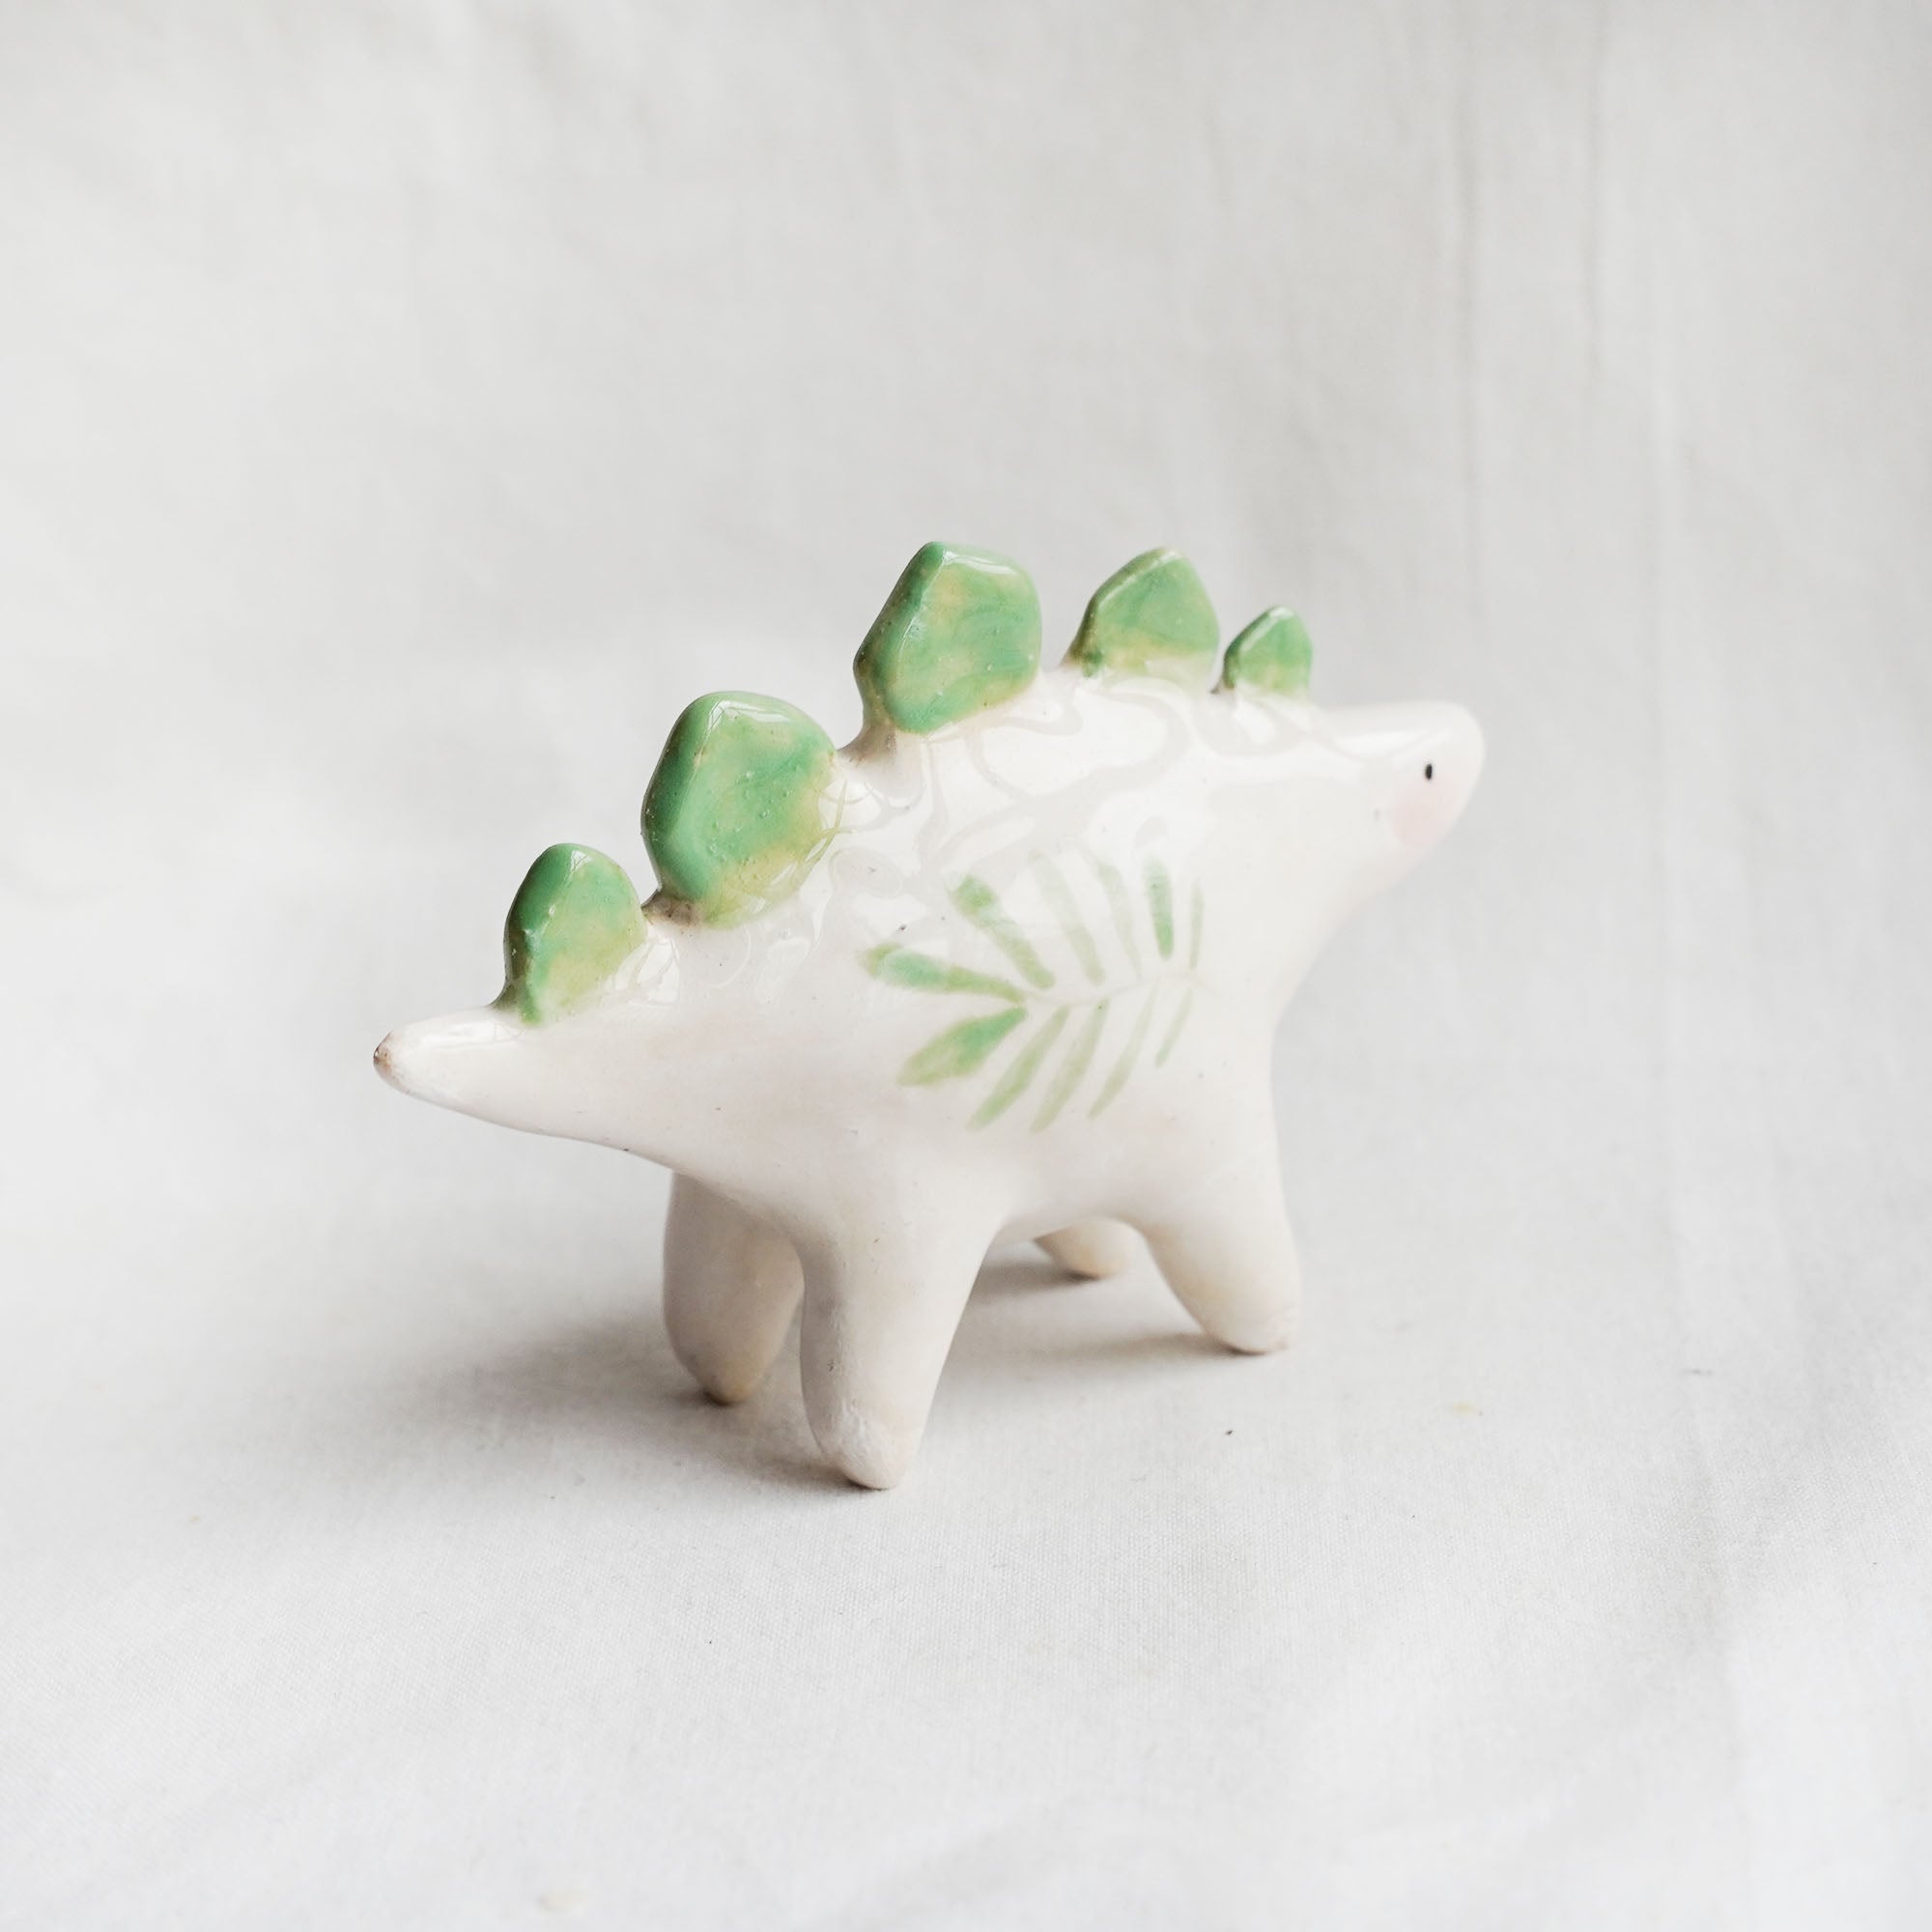 Ceramic stegosaurus figurine